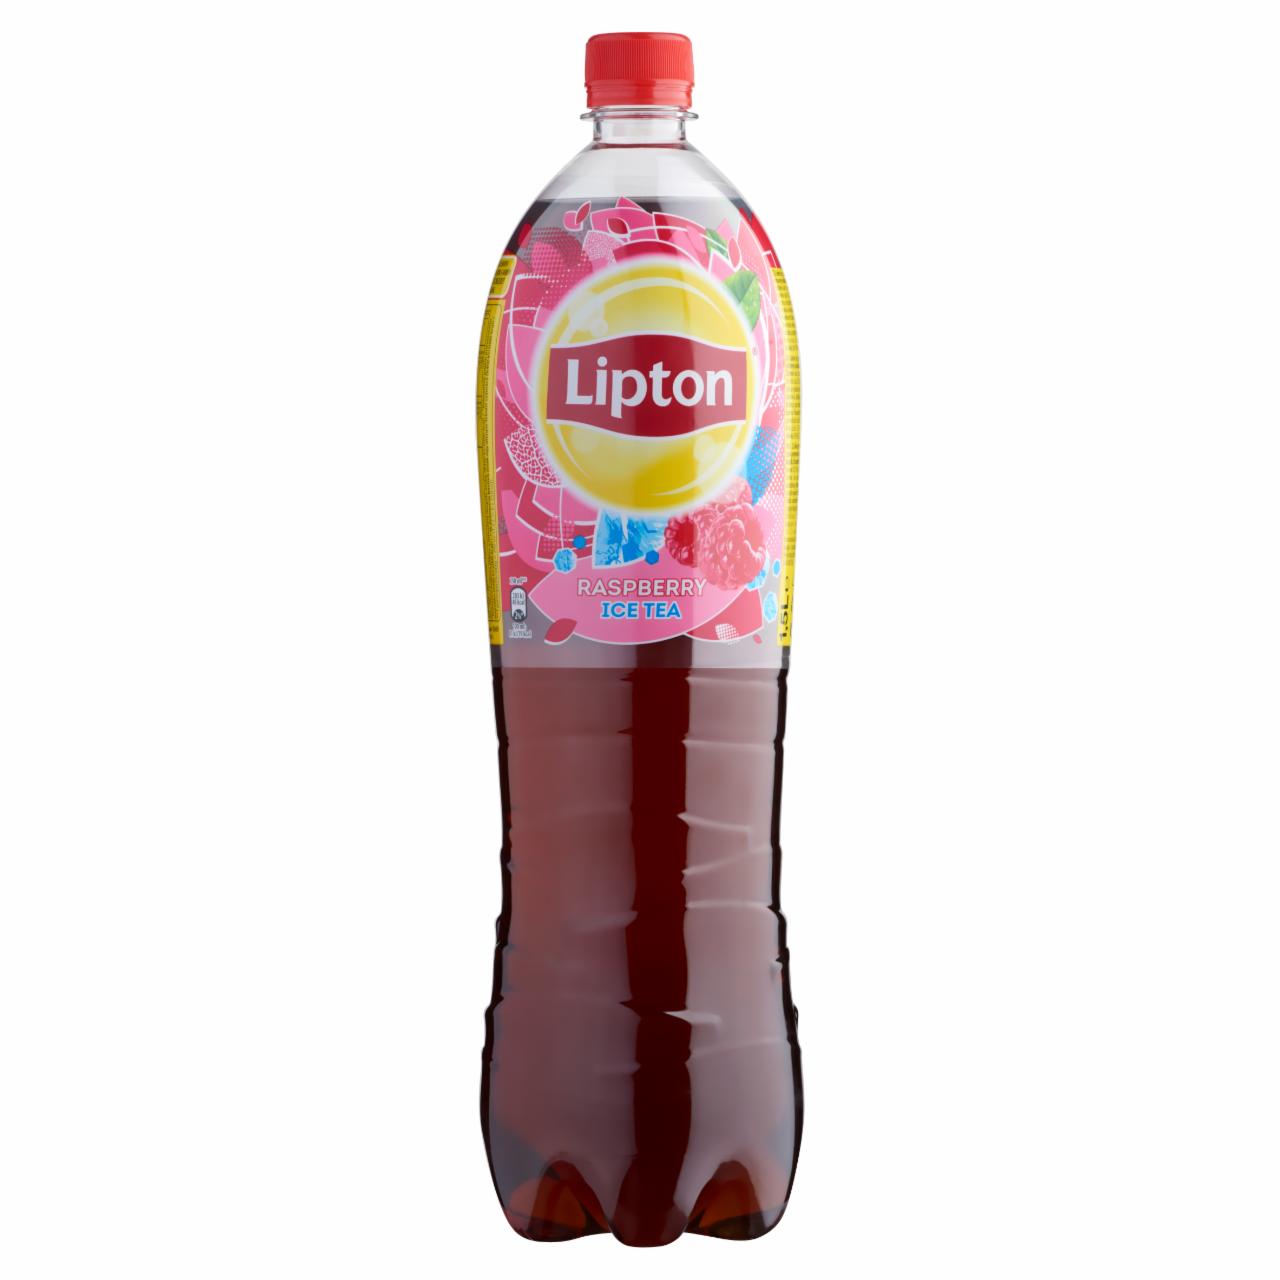 Képek - Lipton Ice Tea csökkentett energiatartalmú málna ízű szénsavmentes üdítőital 1,5 l